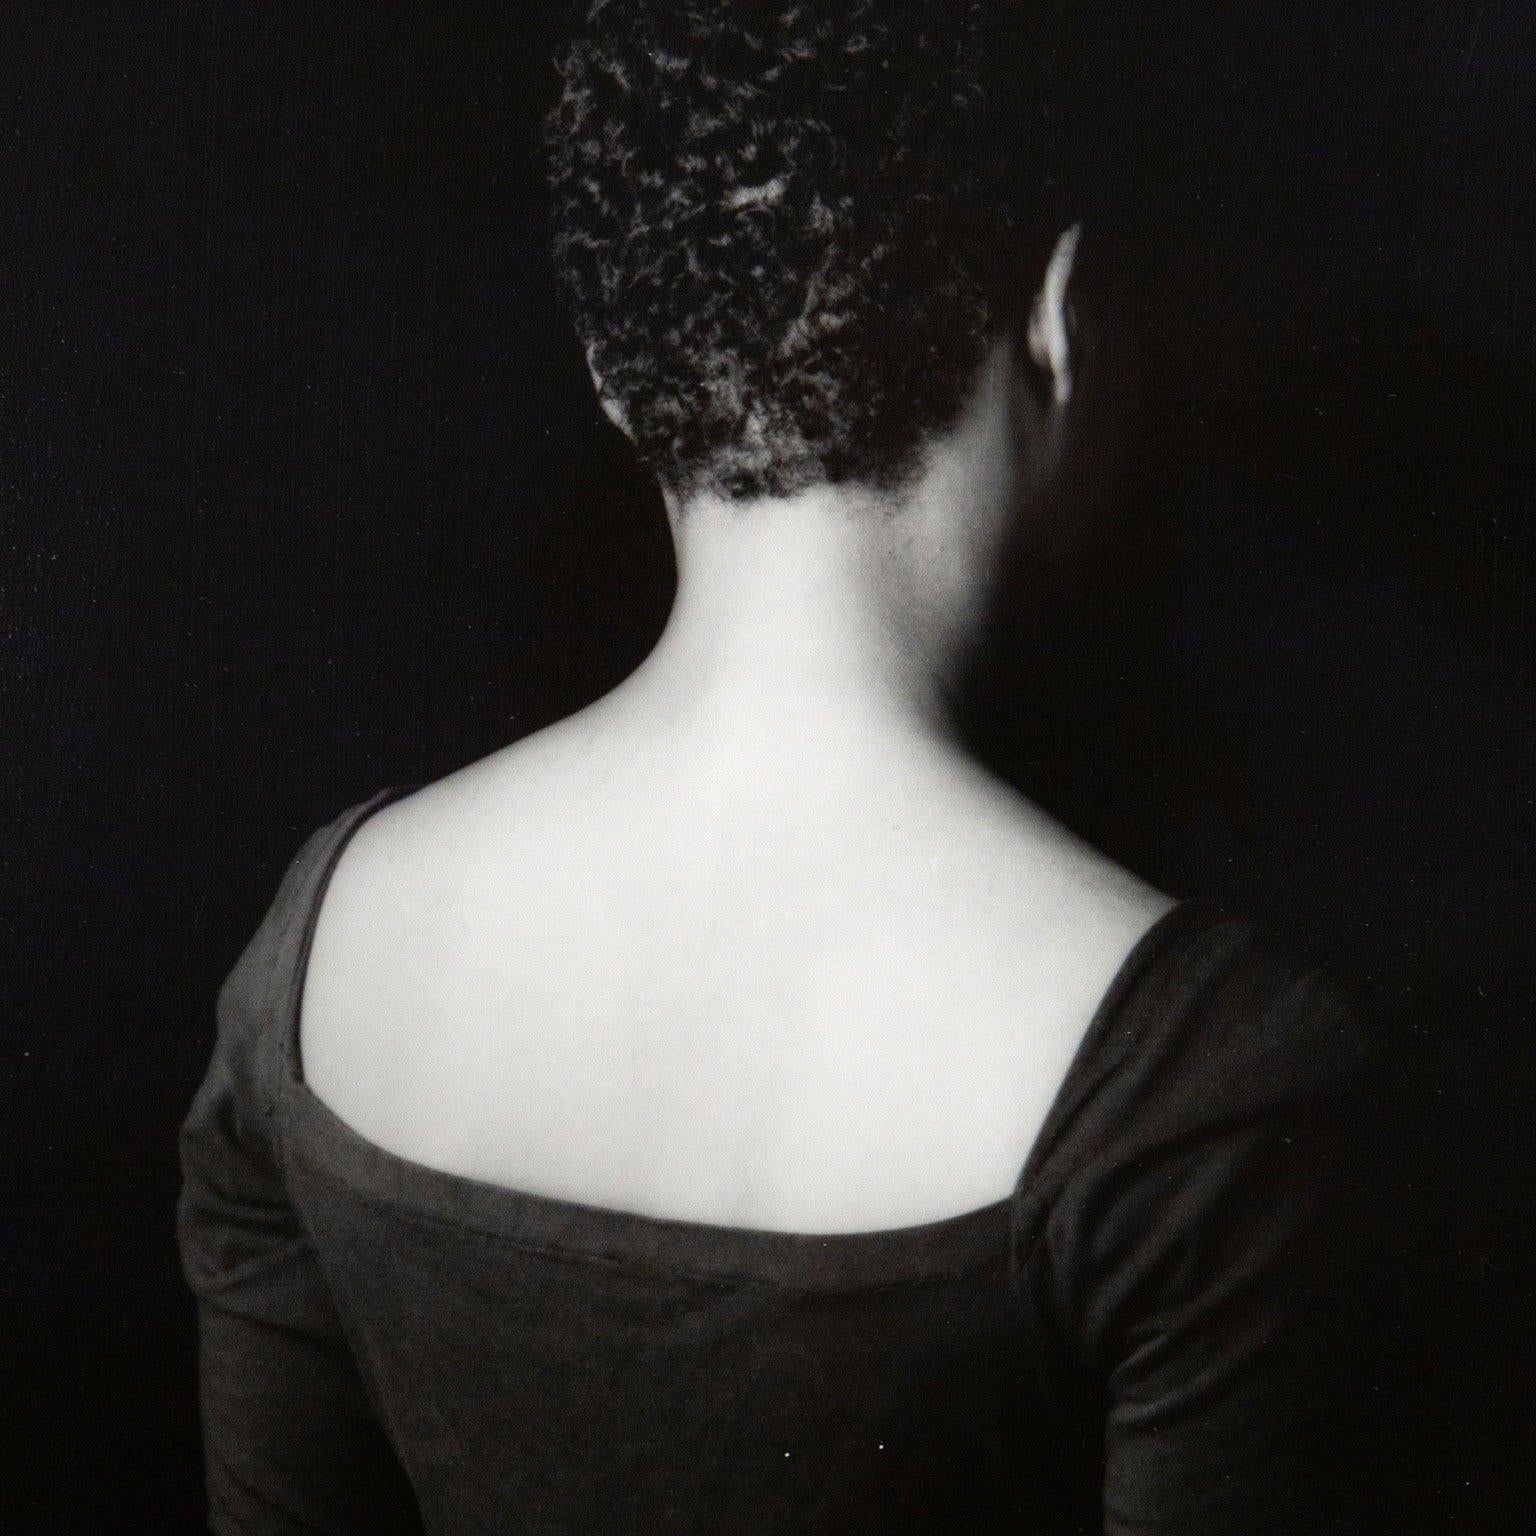 Lorna Simpson ist eine amerikanische Künstlerin, die als Pionierin der konzeptionellen Fotografie gilt. Unabhängig vom Medium erforscht sie in ihren Werken das Zusammenspiel von historischer Erinnerung, Kultur und Identität. 

In postkolonialen und